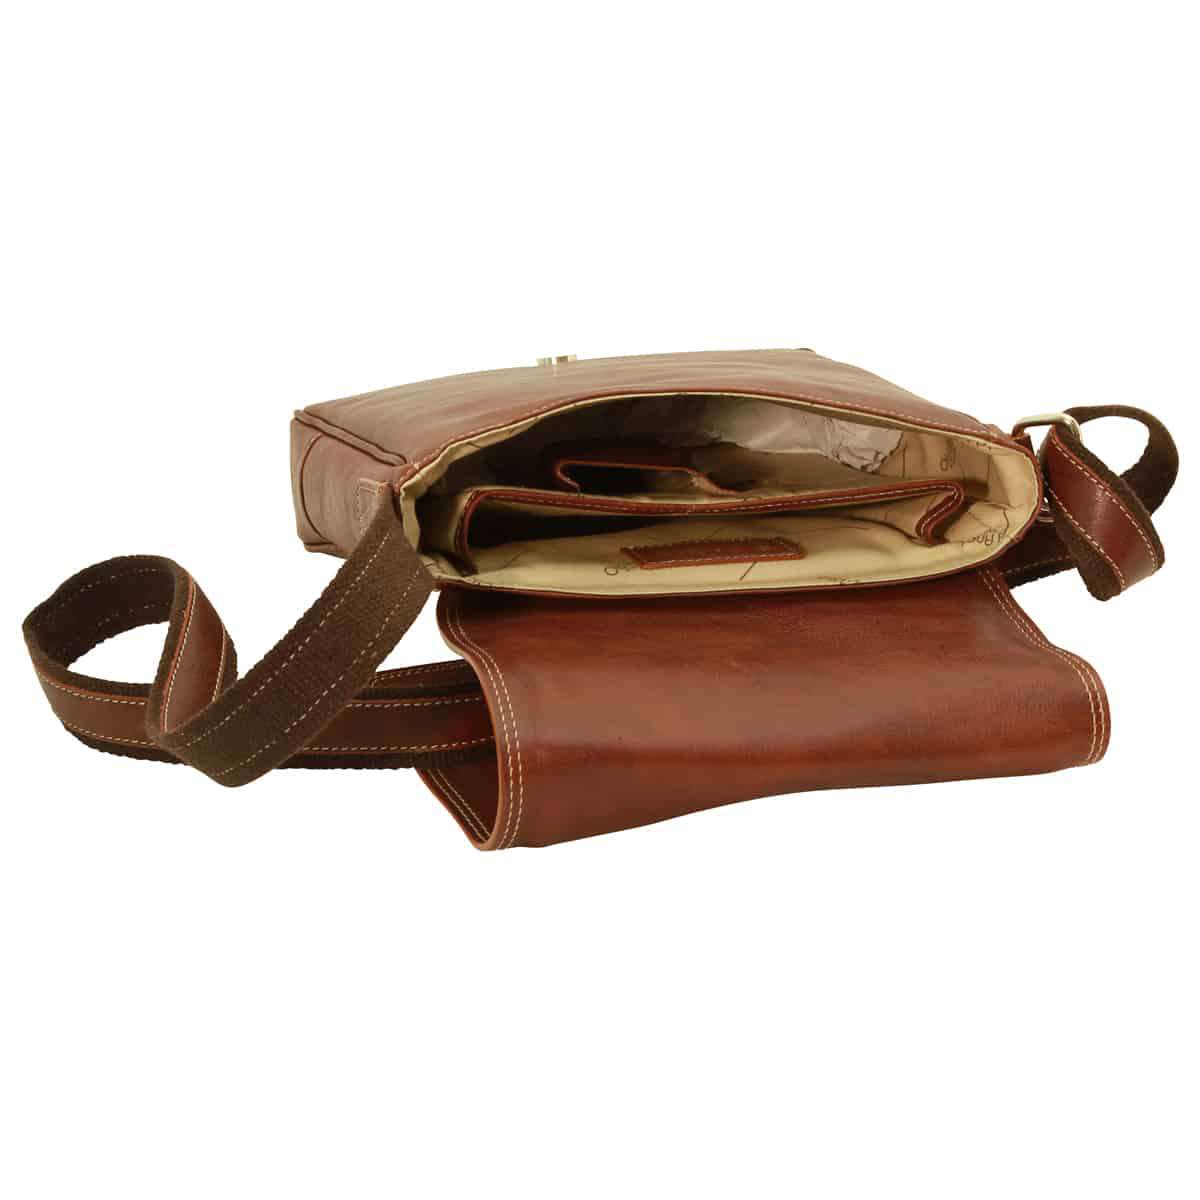 Leather I-Pad bag - Chestnut | 087361CA UK | Old Angler Firenze